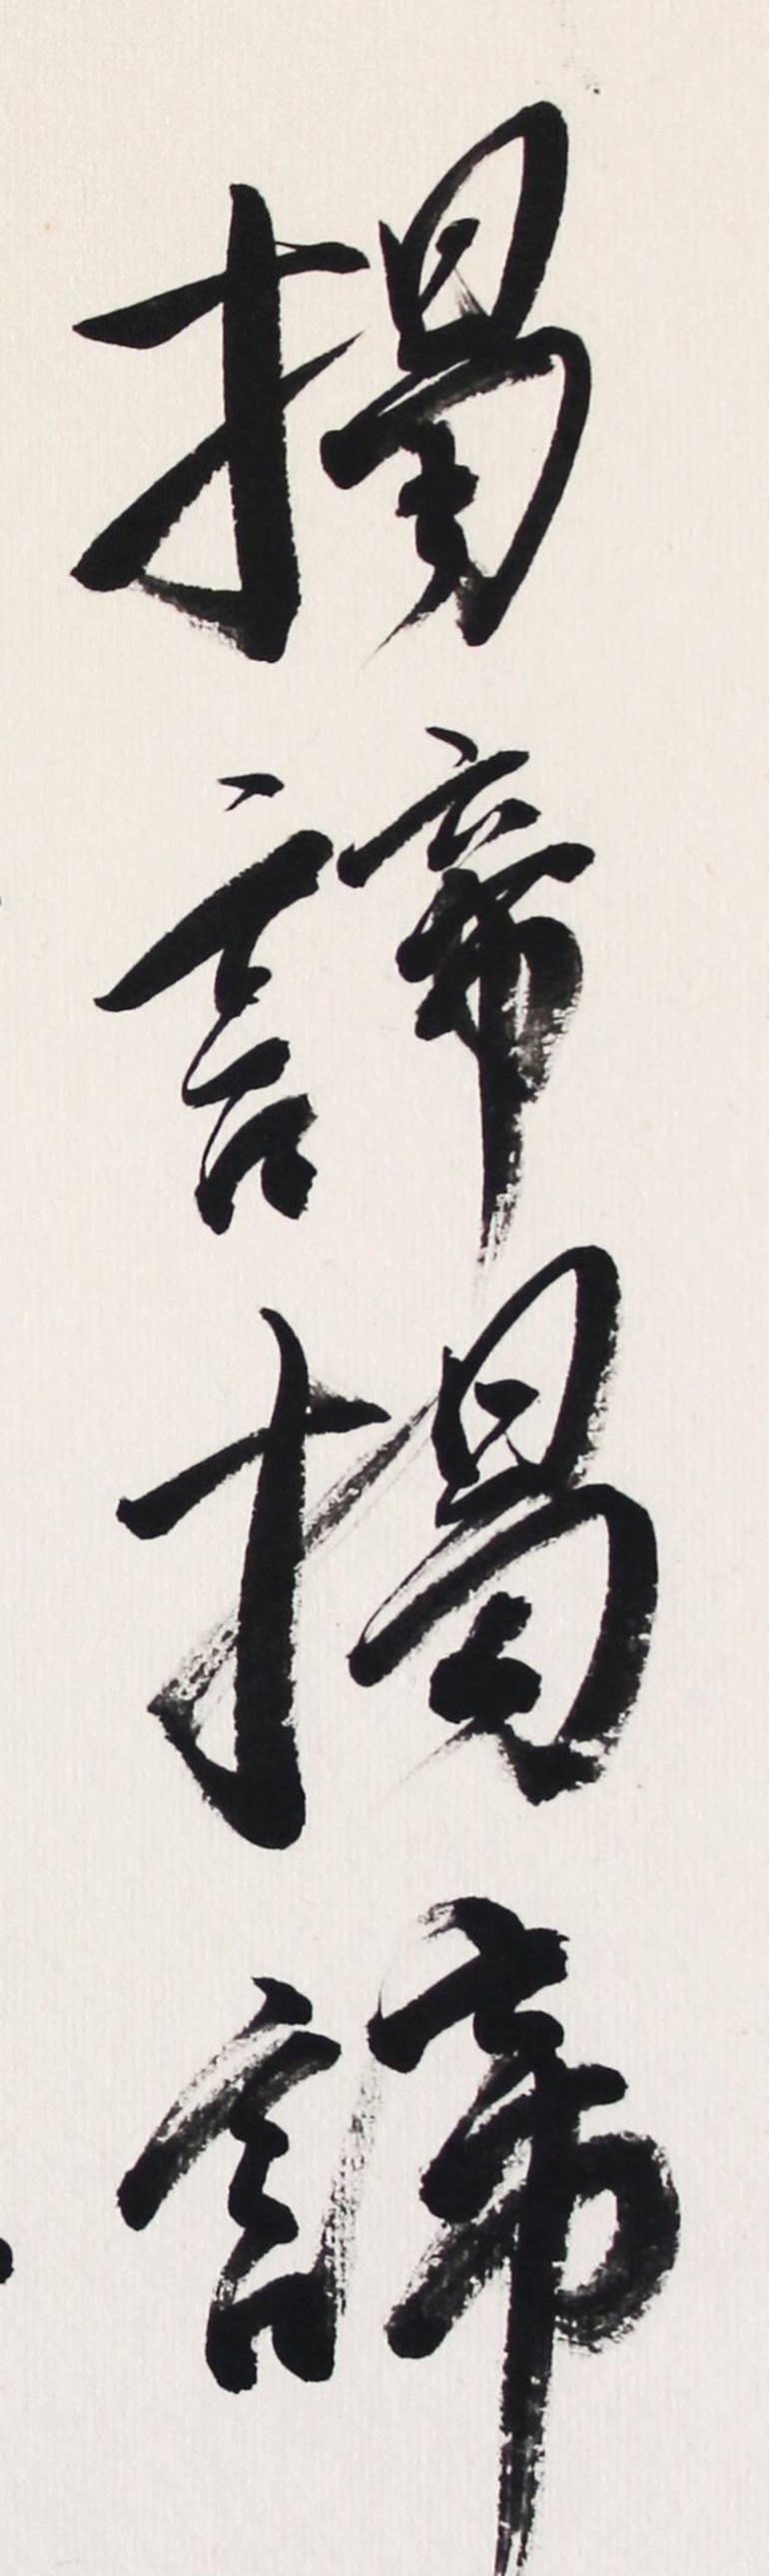 Original Zen Calligraphy Calligraphy Painting by Nadja Van Ghelue